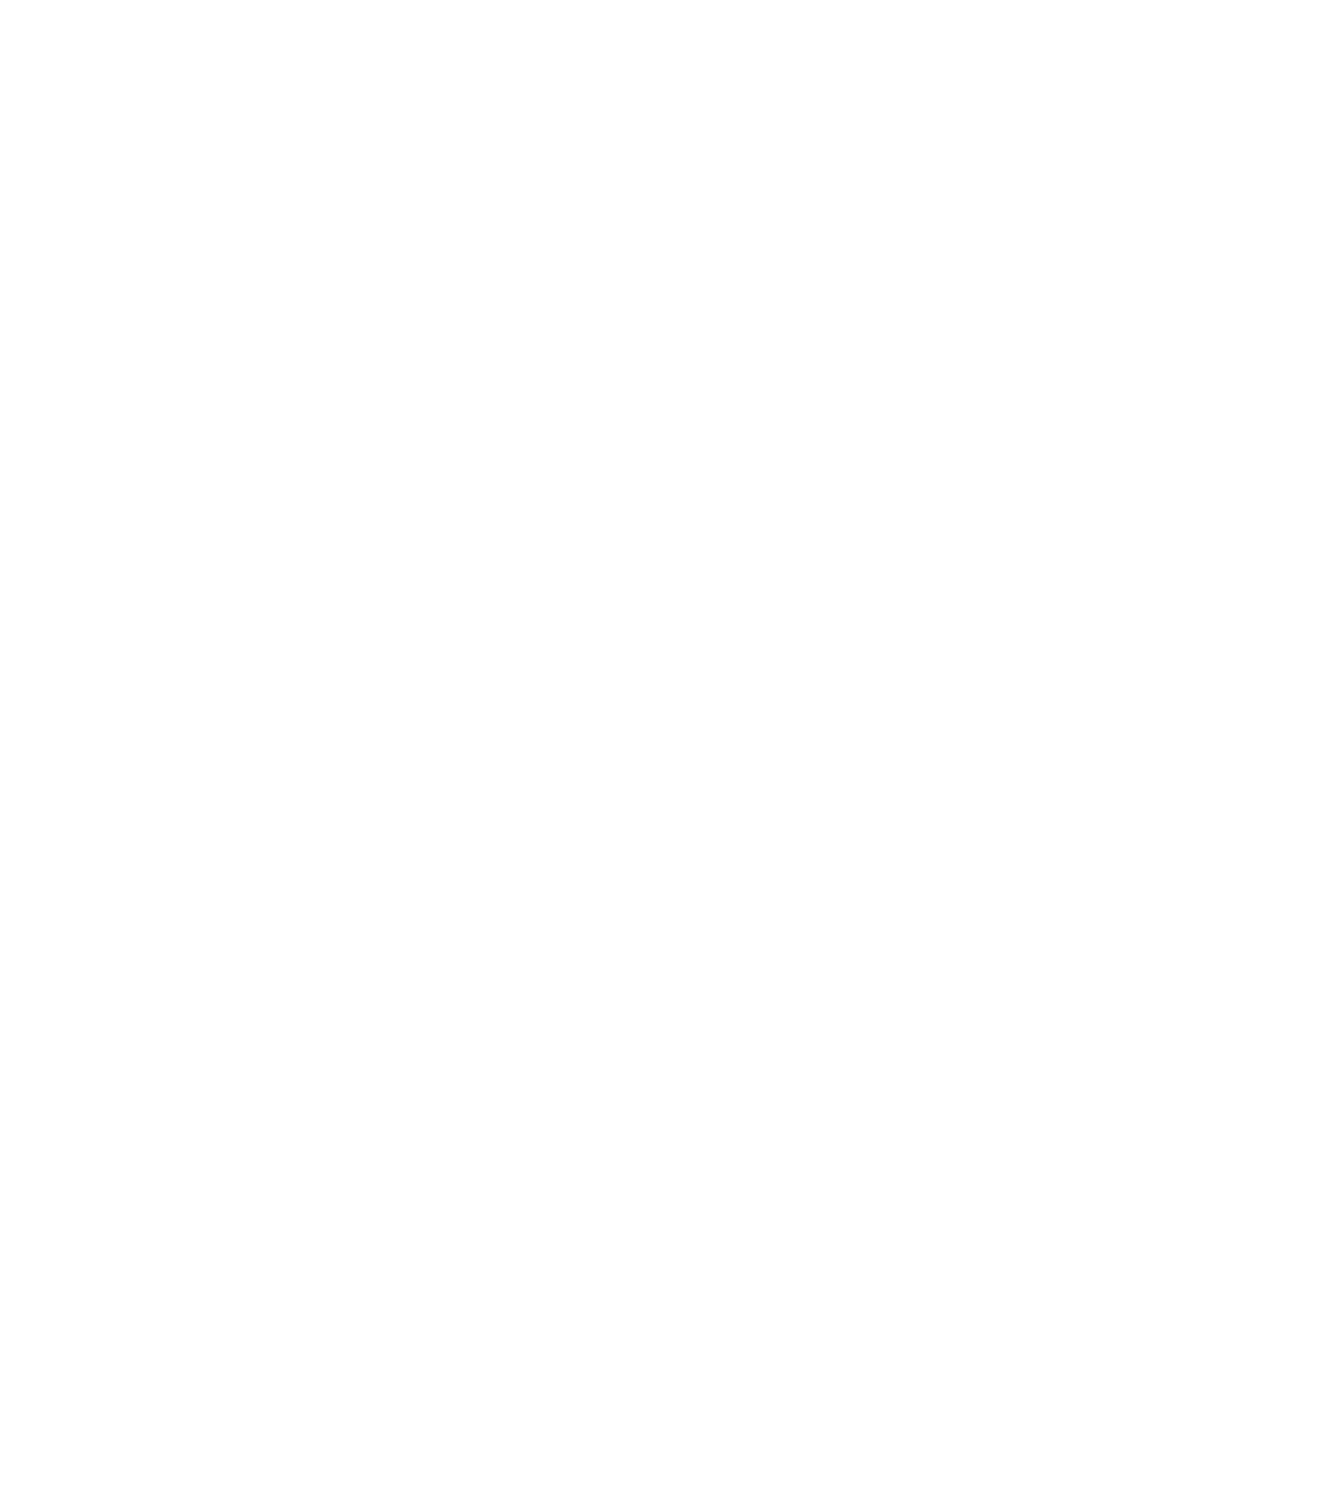 DBV Technologies logo large for dark backgrounds (transparent PNG)